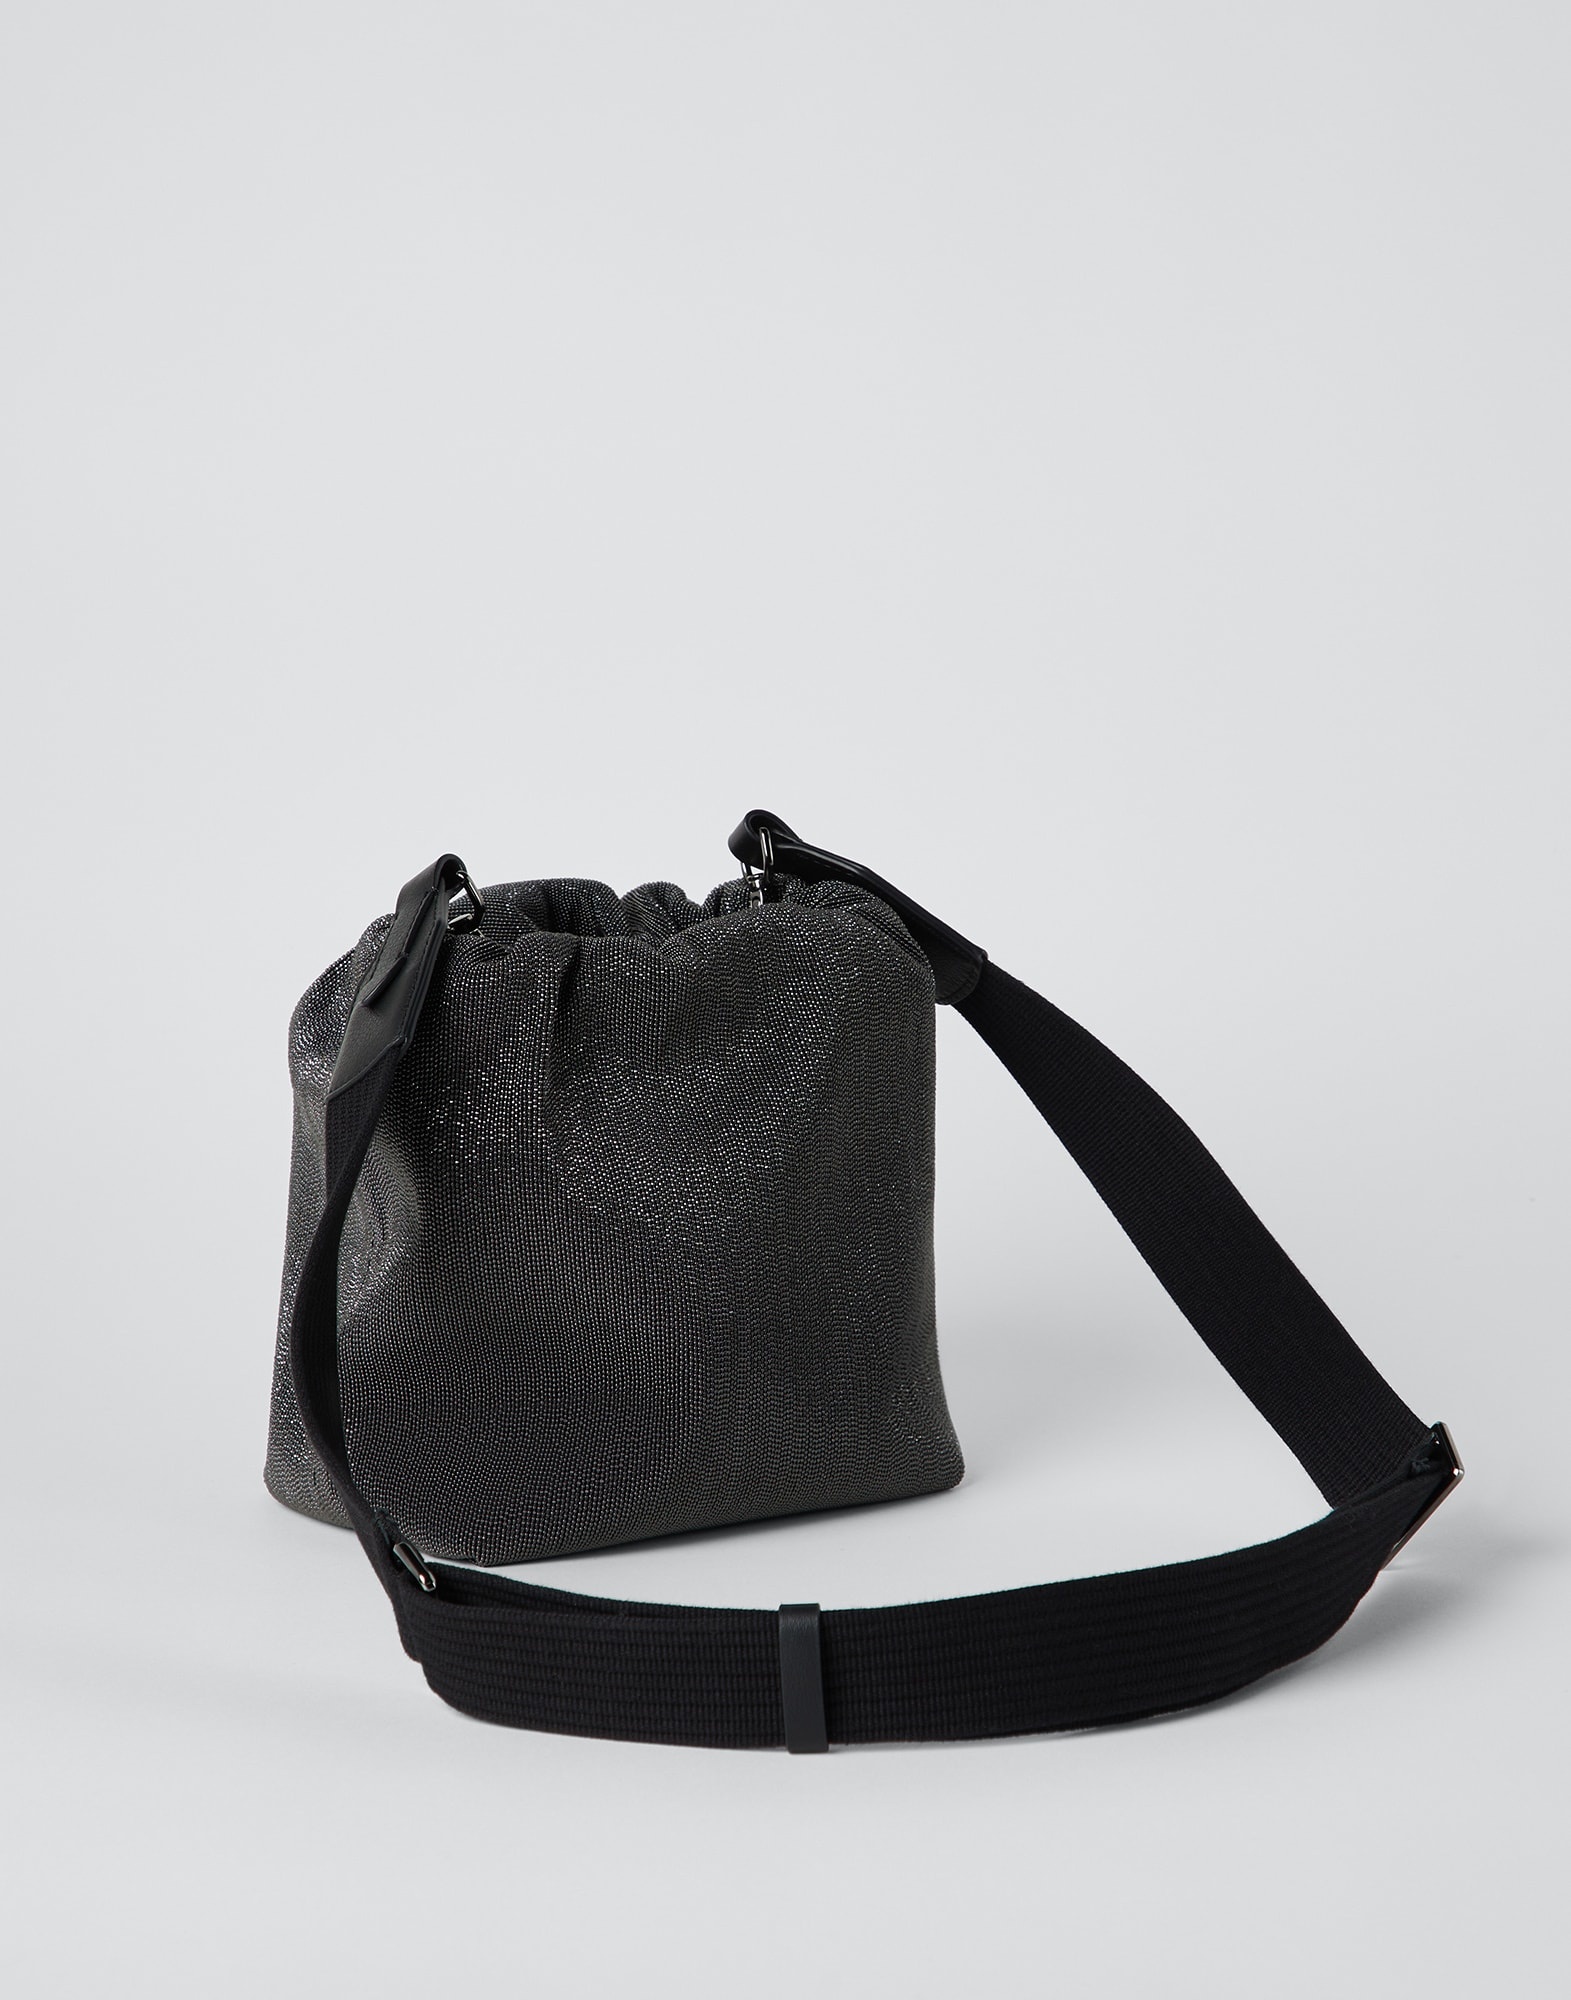 Precious bucket bag with shoulder strap - 2